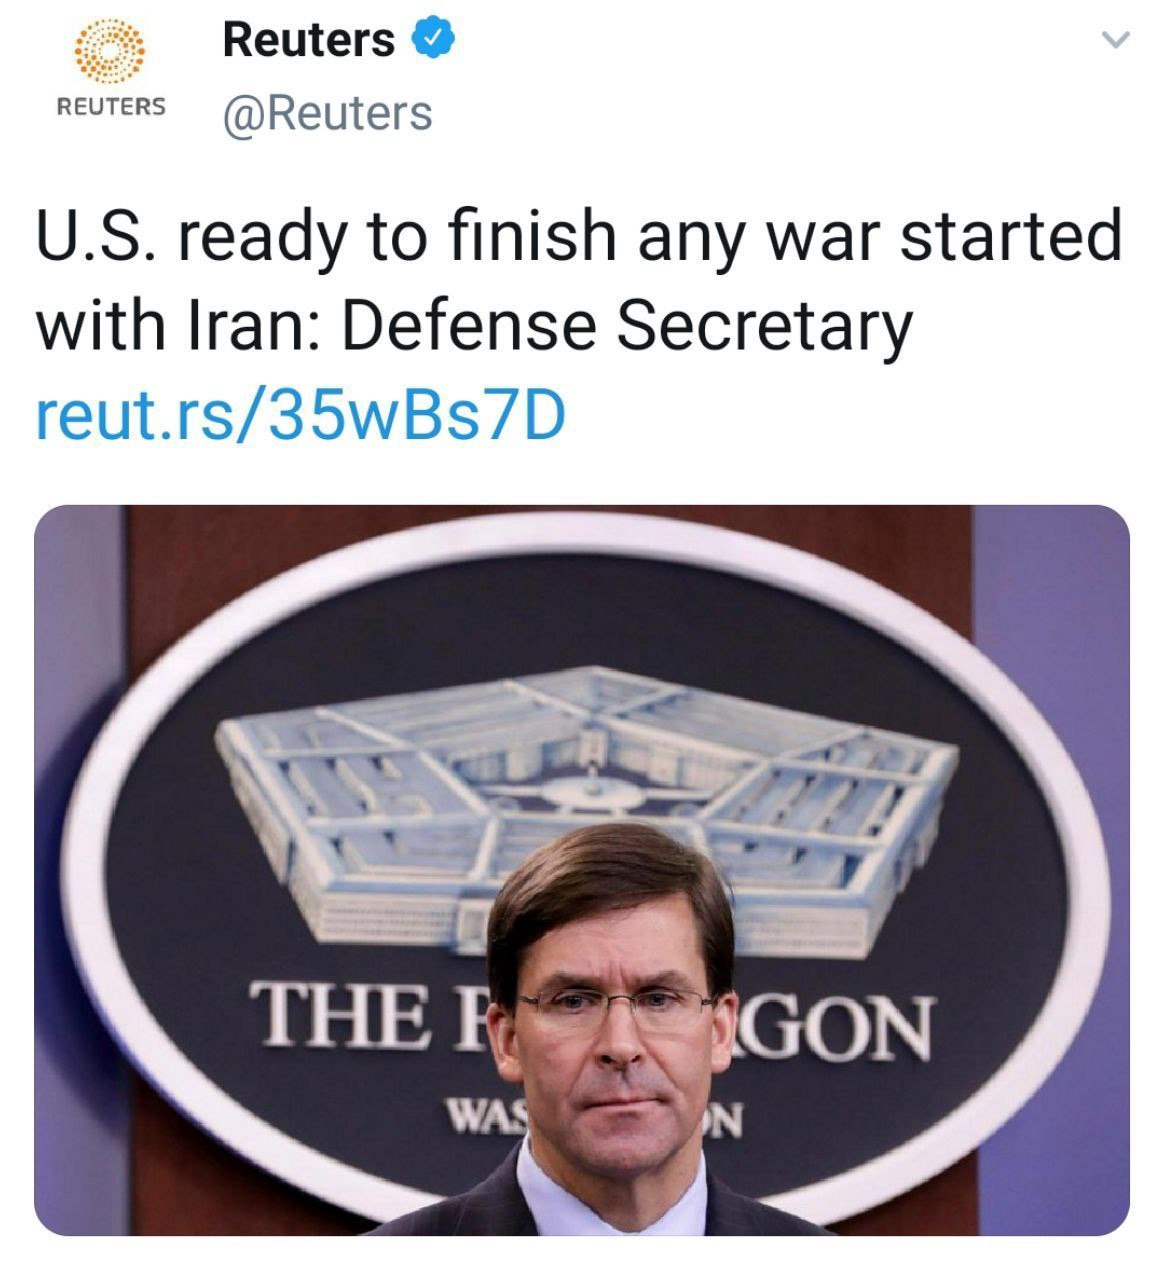 بیانیه مهم اسپر وزیر دفاع ايالات متحده: آمريكا آماده پایان هرگونه جنگی با ایران است.